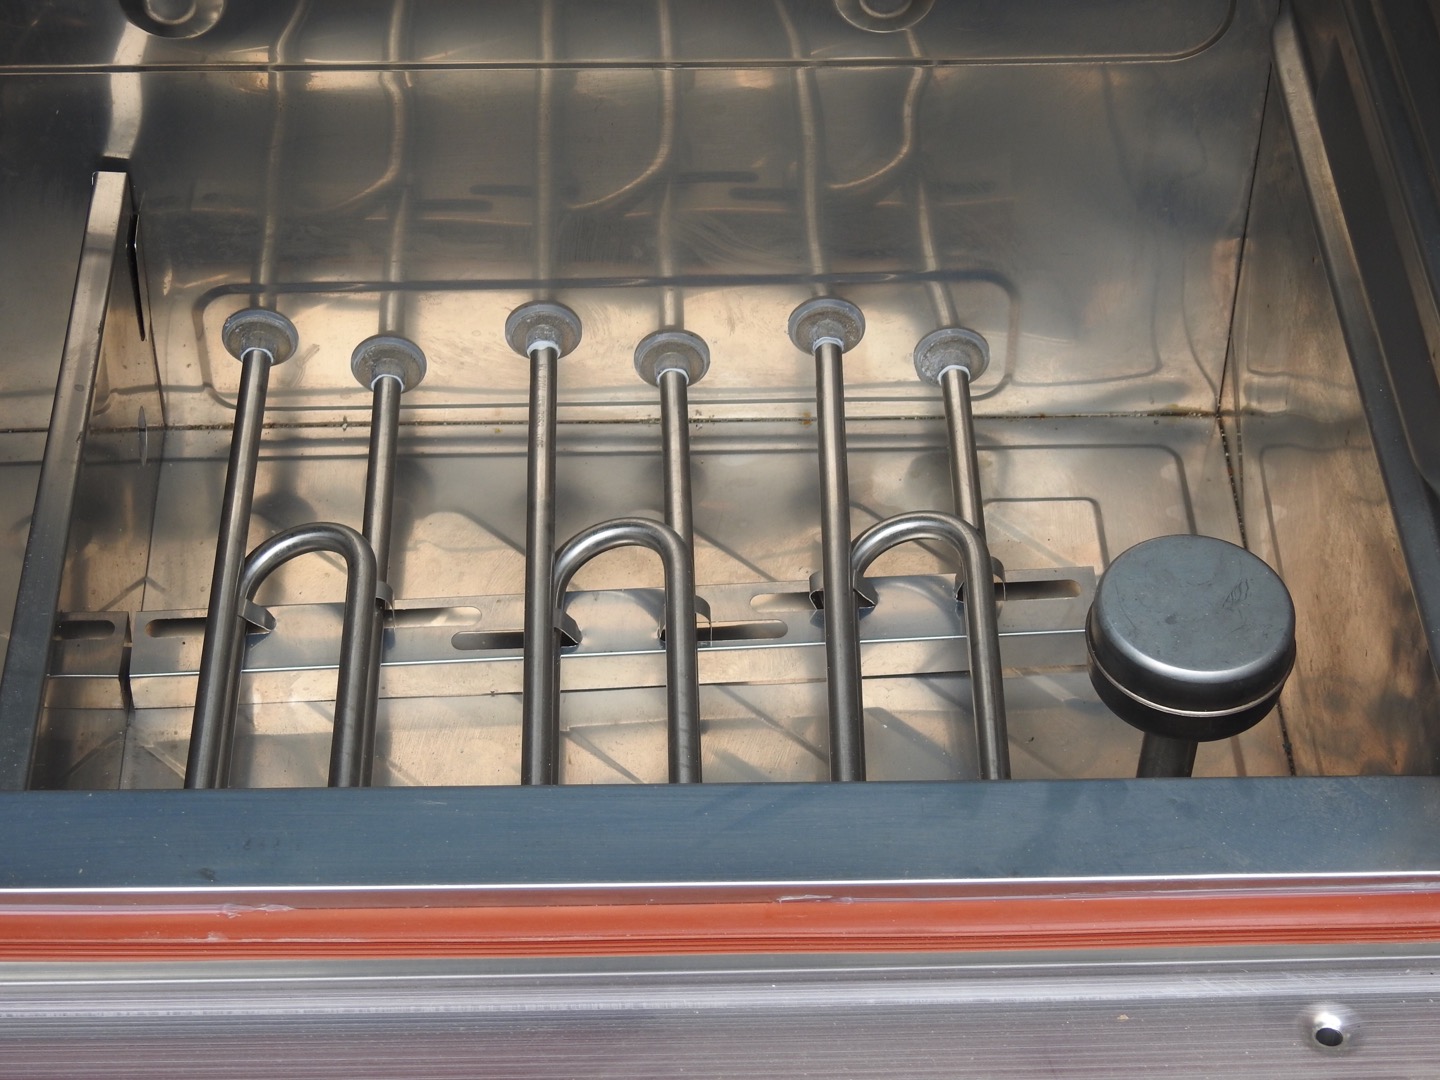 Tủ nấu cơm chạy điện sử dụng thanh nhiệt công suất cao nhưng vô cùng tiết kiệm